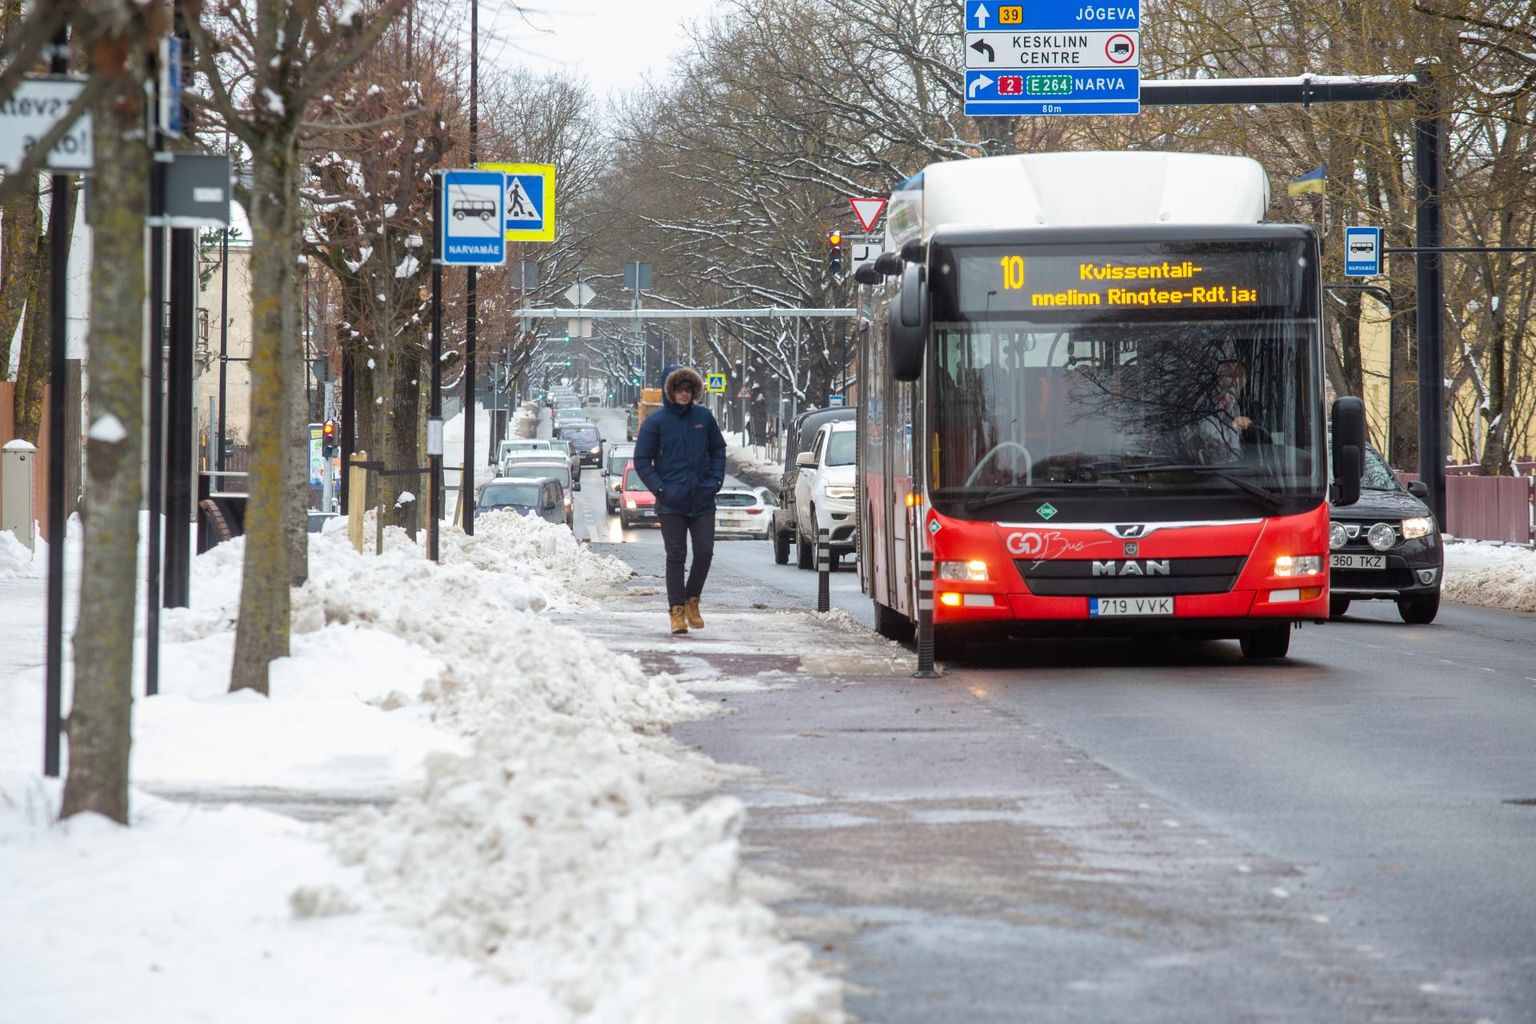 Puiestee tänaval Narvamäe bussipeatuse juures peavad ratturid bussi peale minejatele teed andma.